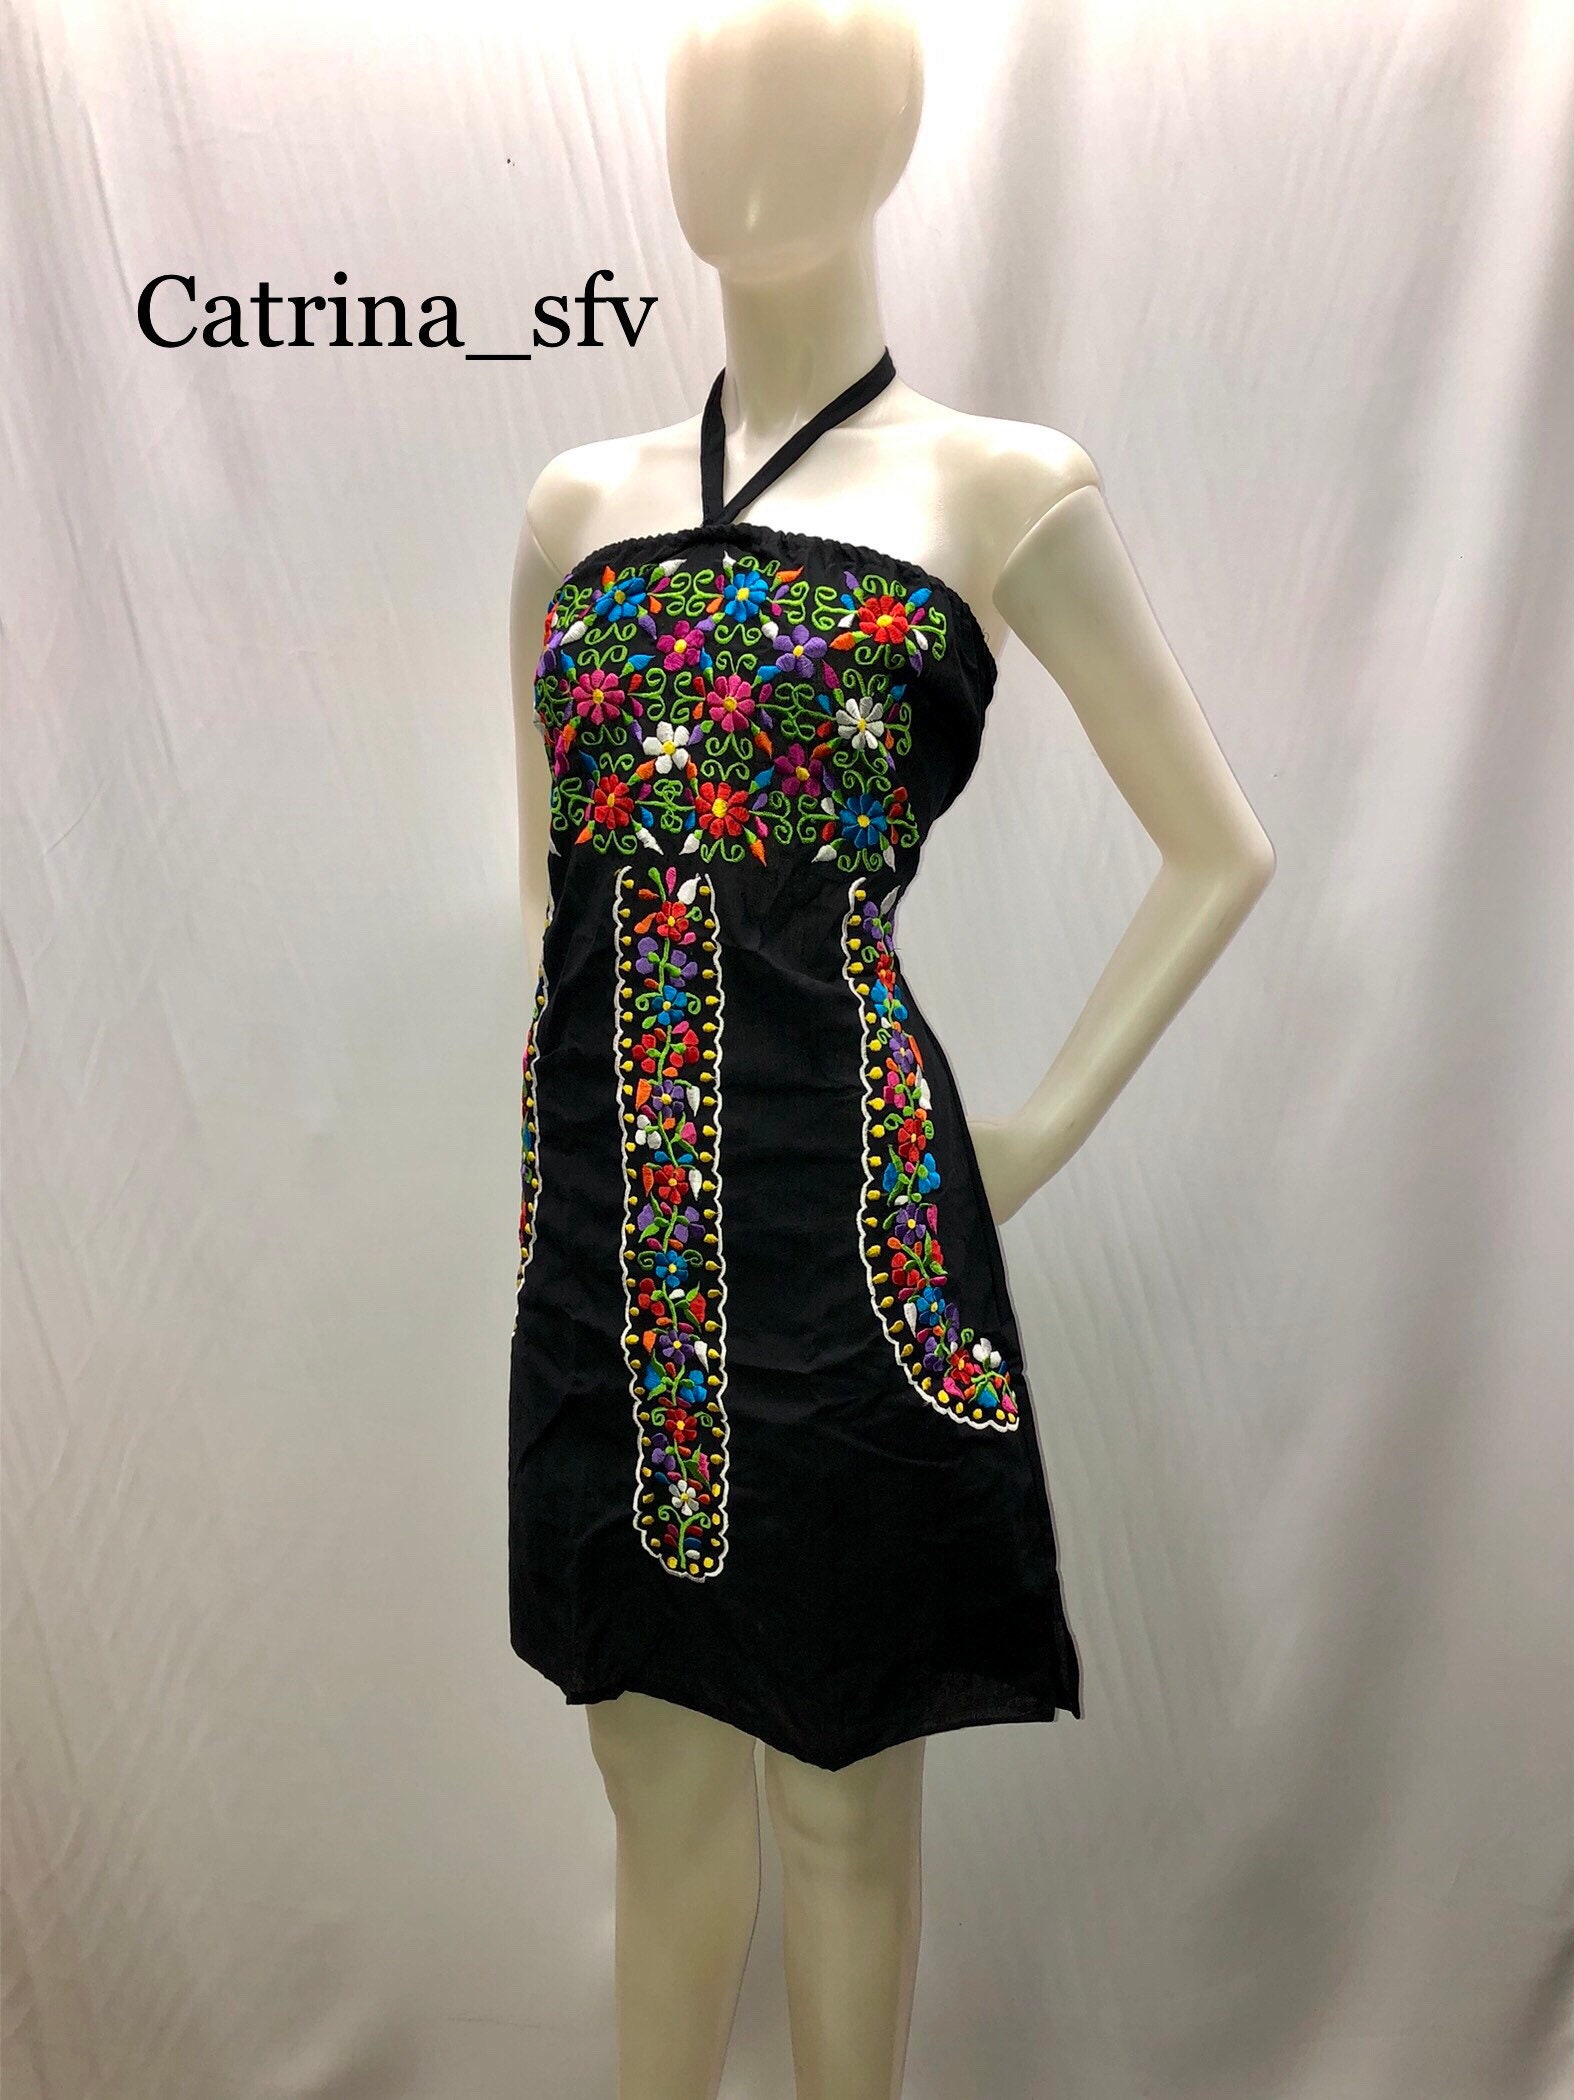 Vestido negro bordado, off the shoulders dress, vestido artesanal, vestido típico, mexicano dress, fiesta mexicana ENVÍO GRATIS EN ESTADOS